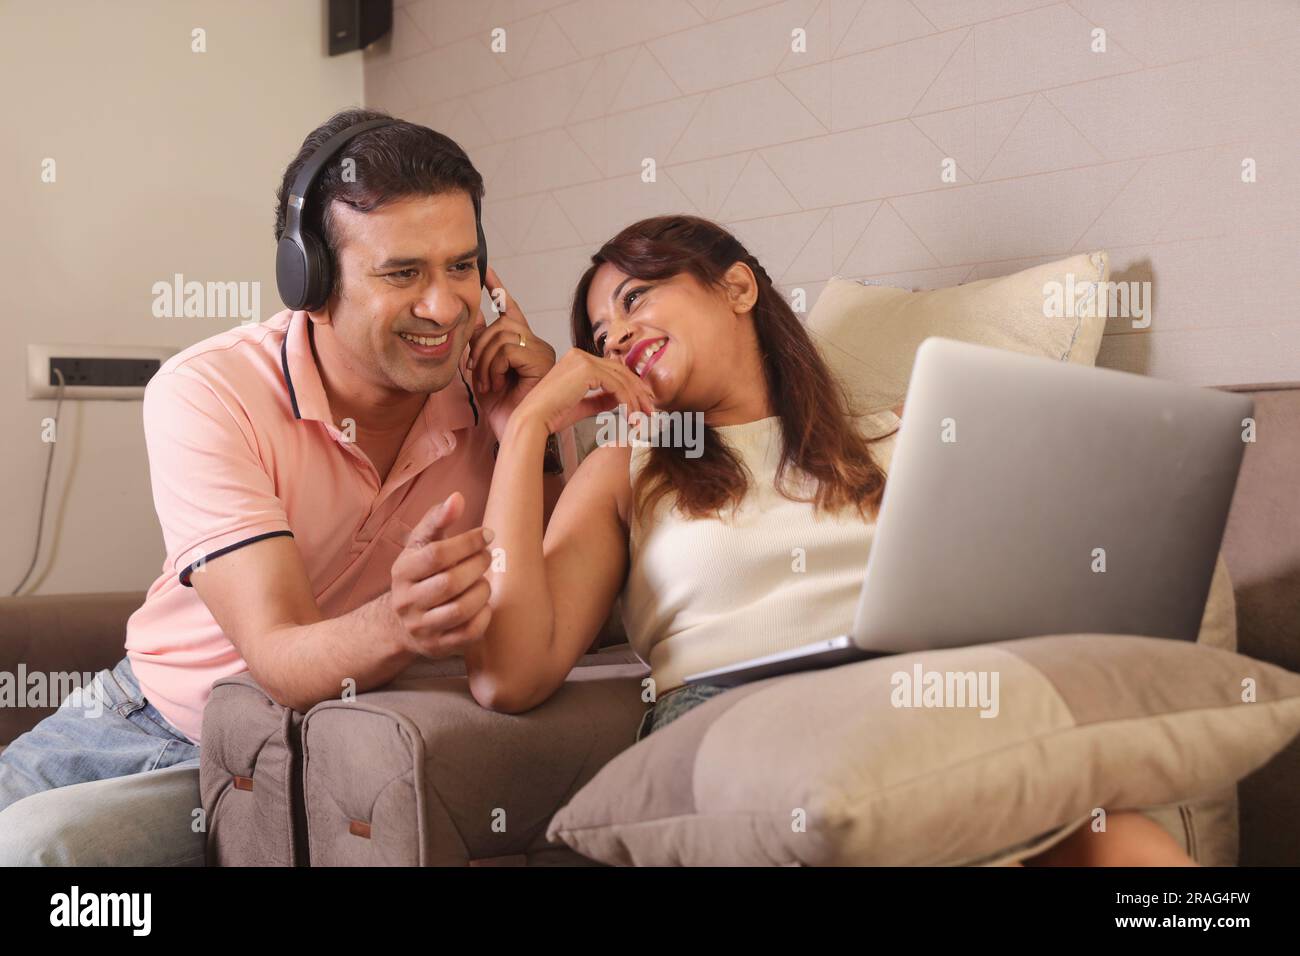 Indiano coppia felice mangiare insalata e dieta sana seduti su un divano tenendo un portatile navigare online. Ascolto di musica. Ascolto di canzoni. Foto Stock